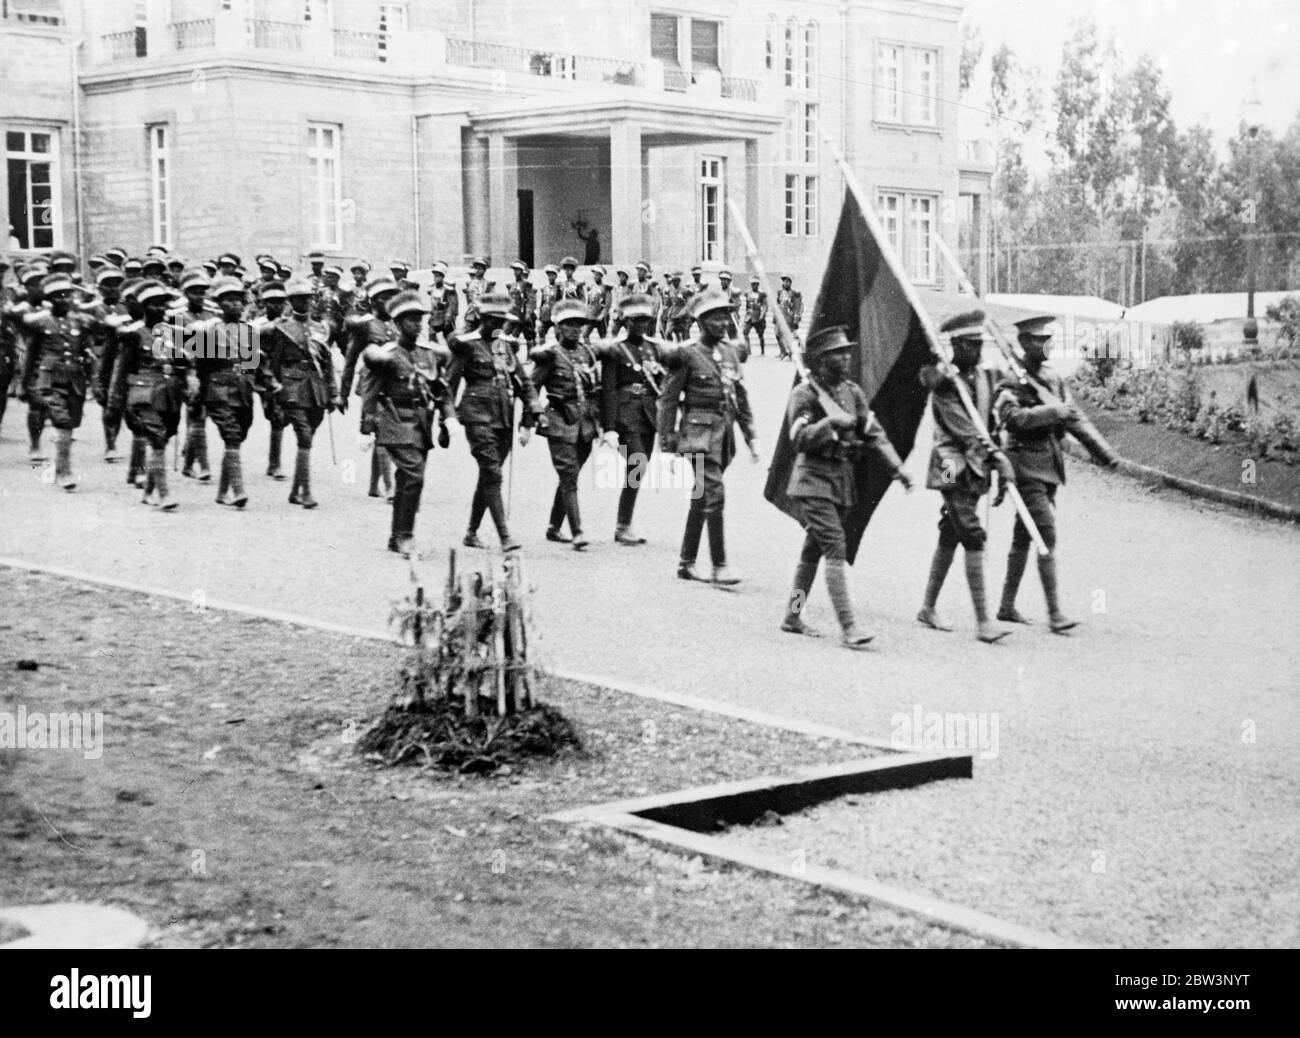 Cambiando la guardia en el palacio del emperador abisino. Espectáculos de fotos, la Guardia Imperial de Abisinia en la ceremonia del cambio de guardia en el Palacio Real de Addis Abeba. 2 de agosto de 1935 Foto de stock